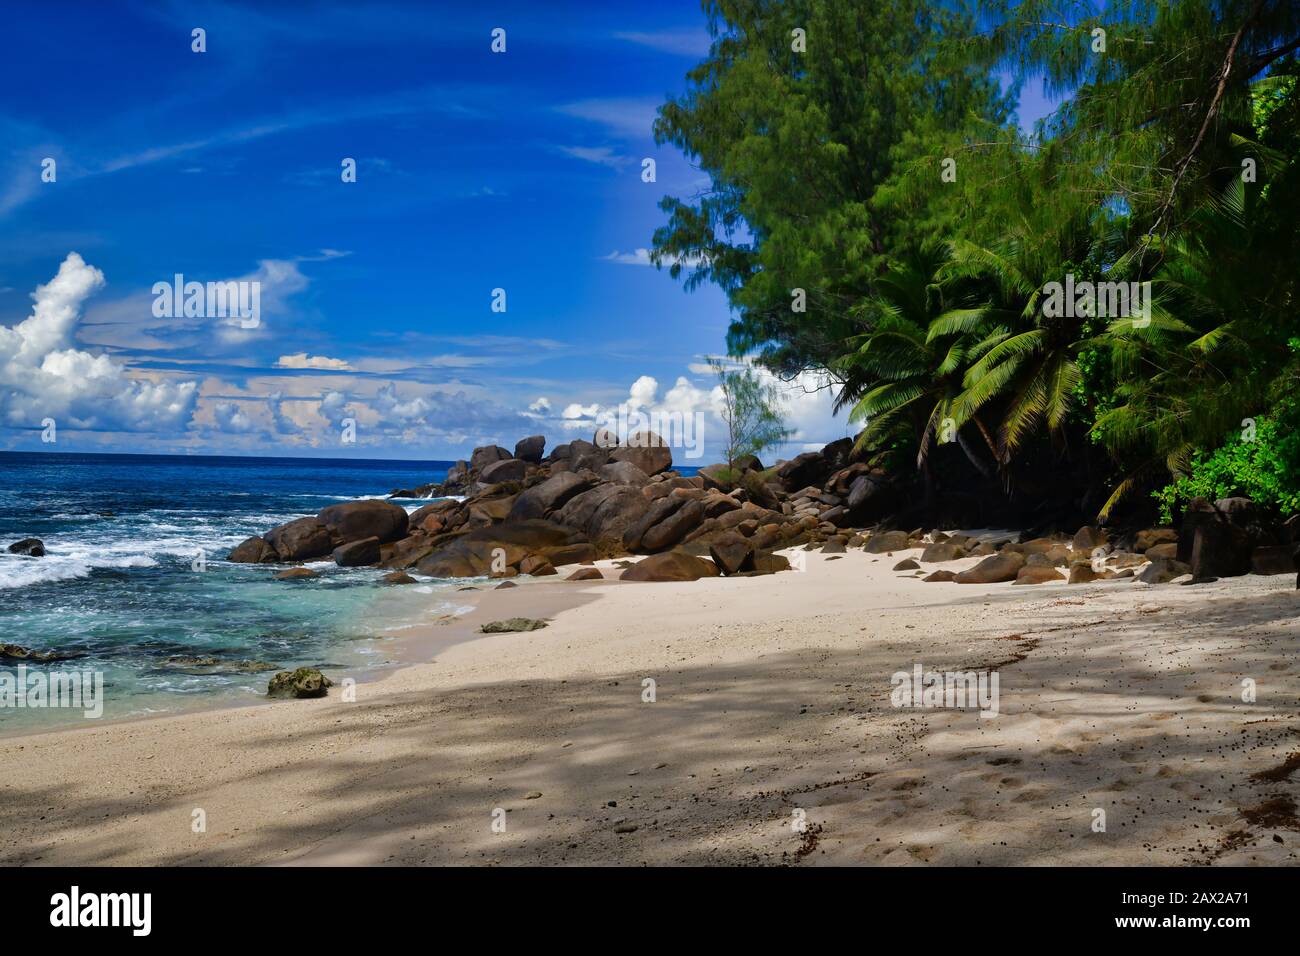 Meereswellen und Granit-Felsen Takamaka Beach, Mahe Island, Seychellen. Palmbäume, Sand, abstürmende Wellen, schönes Ufer, blauer Himmel und türkisfarbenes Wasser Stockfoto